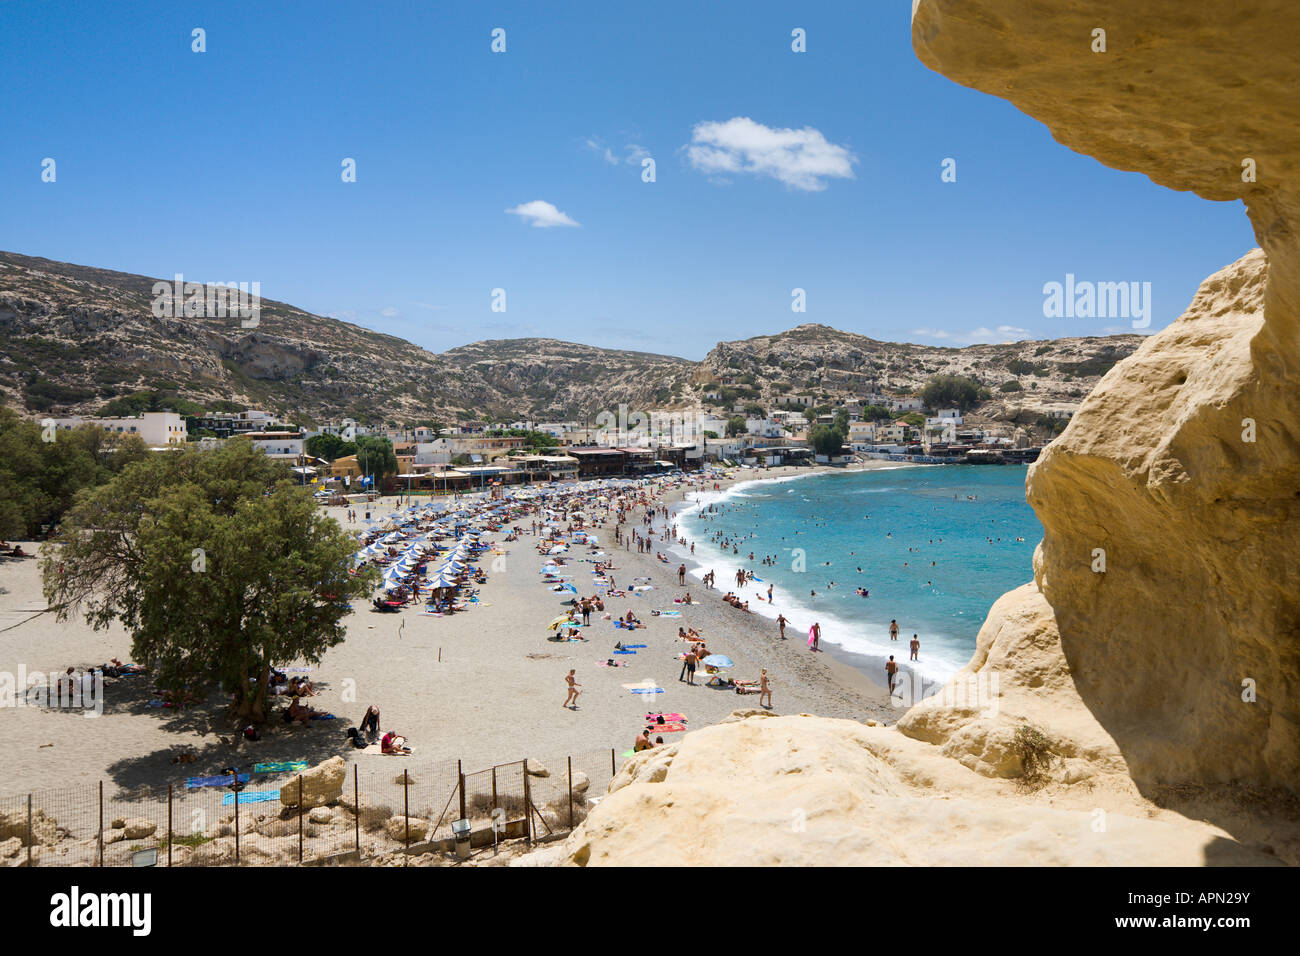 Vista sobre la playa y el pueblo de los acantilados y cuevas, Matala, Costa Sur, provincia de Iraklion, Creta, Grecia Foto de stock